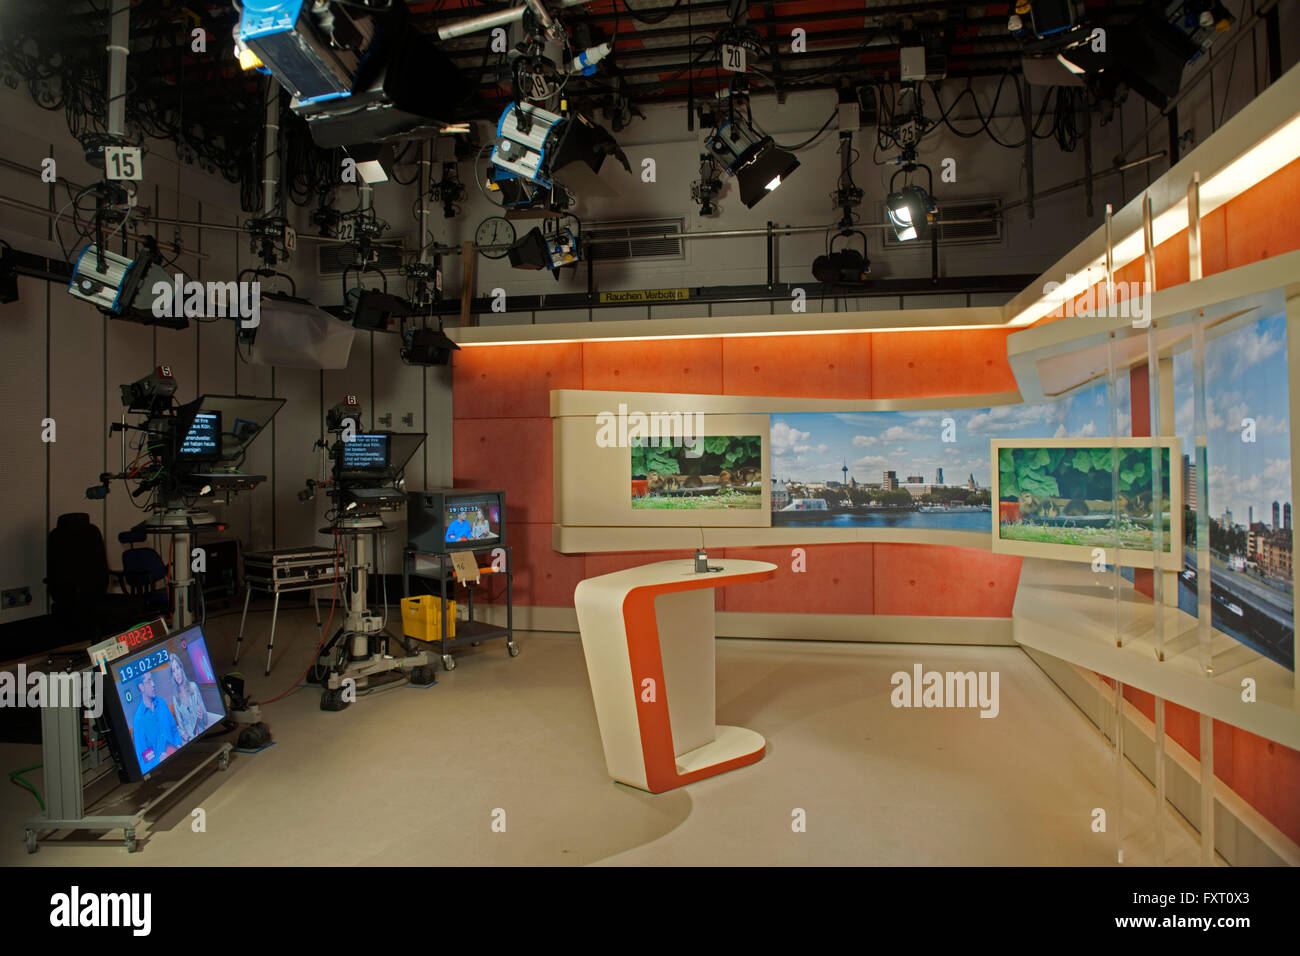 Deutschland, Nordrhein-Westfalen, Köln, WDR Studio, aus diesem Fernsehstudio wird Lokalzeit Köln gesendet. Stock Photo